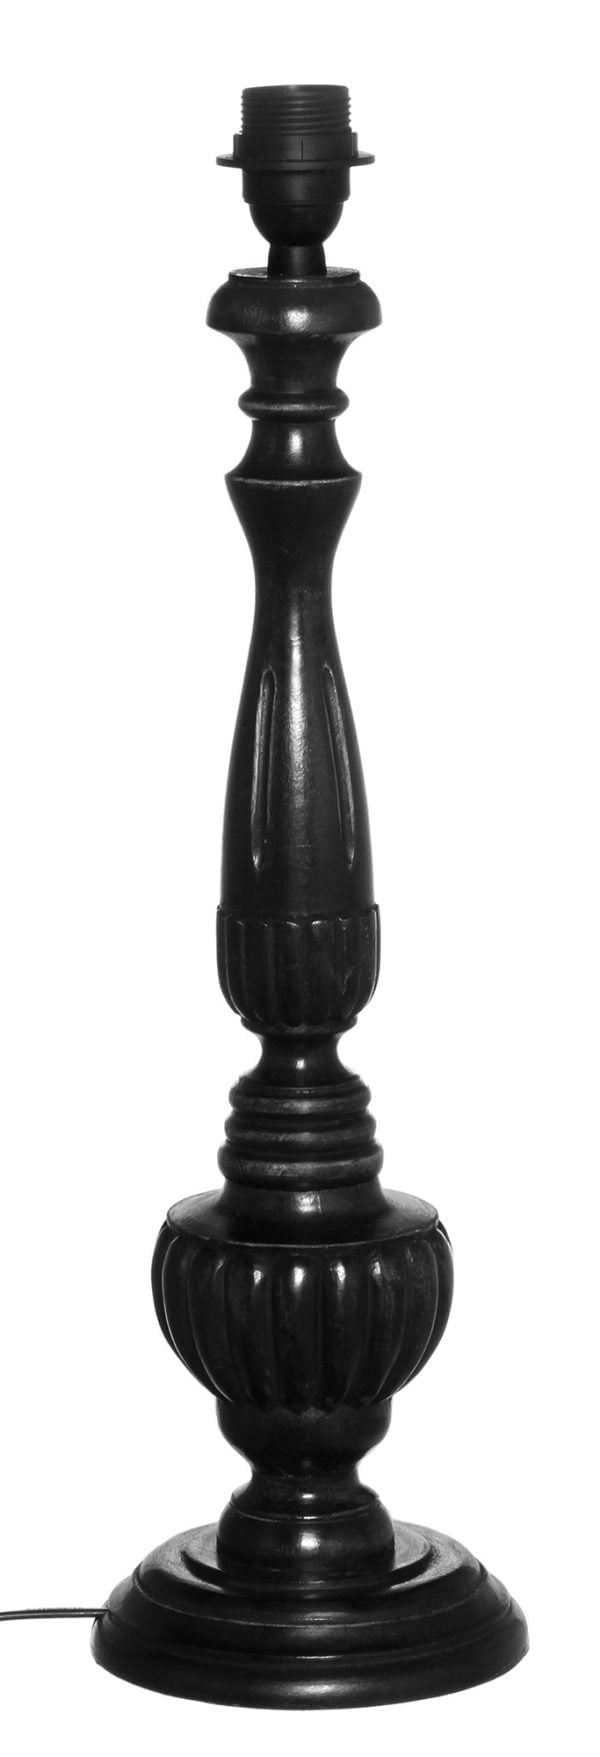 Puinen lampunjalka jonka väri on musta.